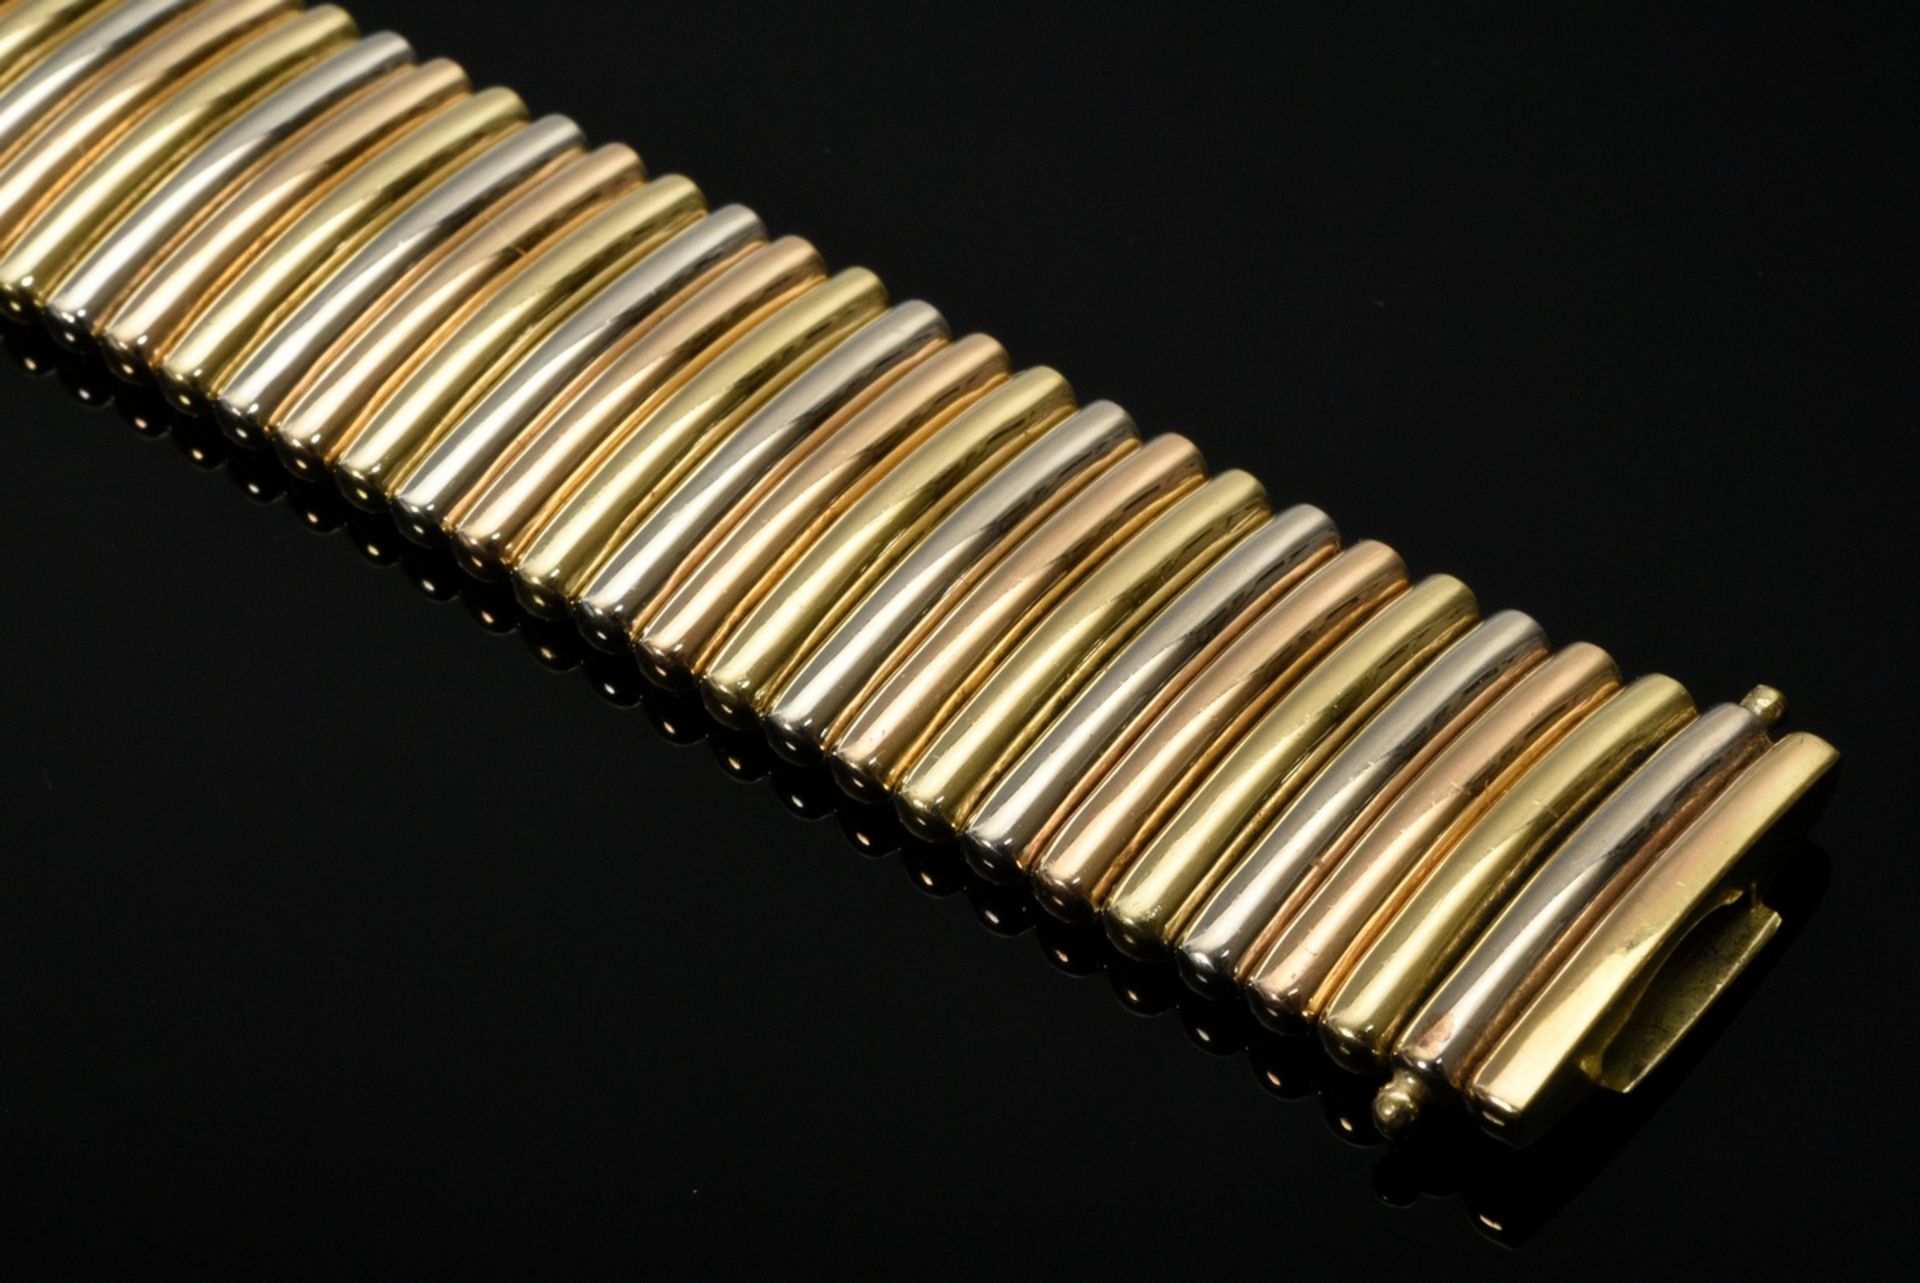 Wempe tricolor gold 750 rod bracelet, sign, 66,4g, 18,8x2cm - Image 4 of 5